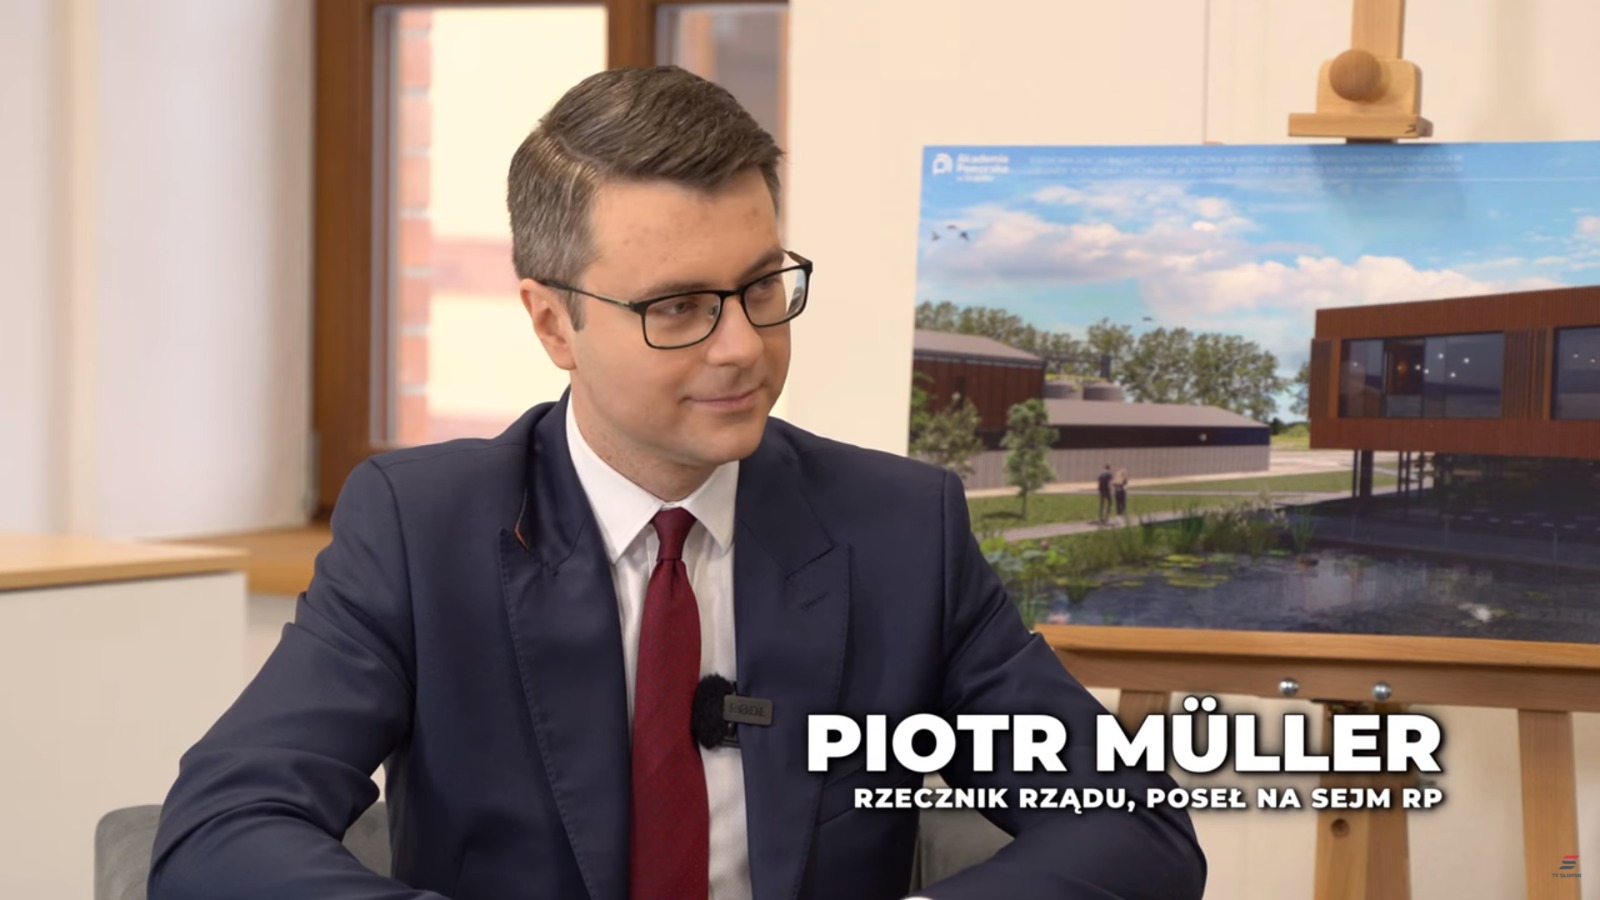 Rozmowa o najważniejszych dla Słupska i całego regionu sprawach i inwestycjach.